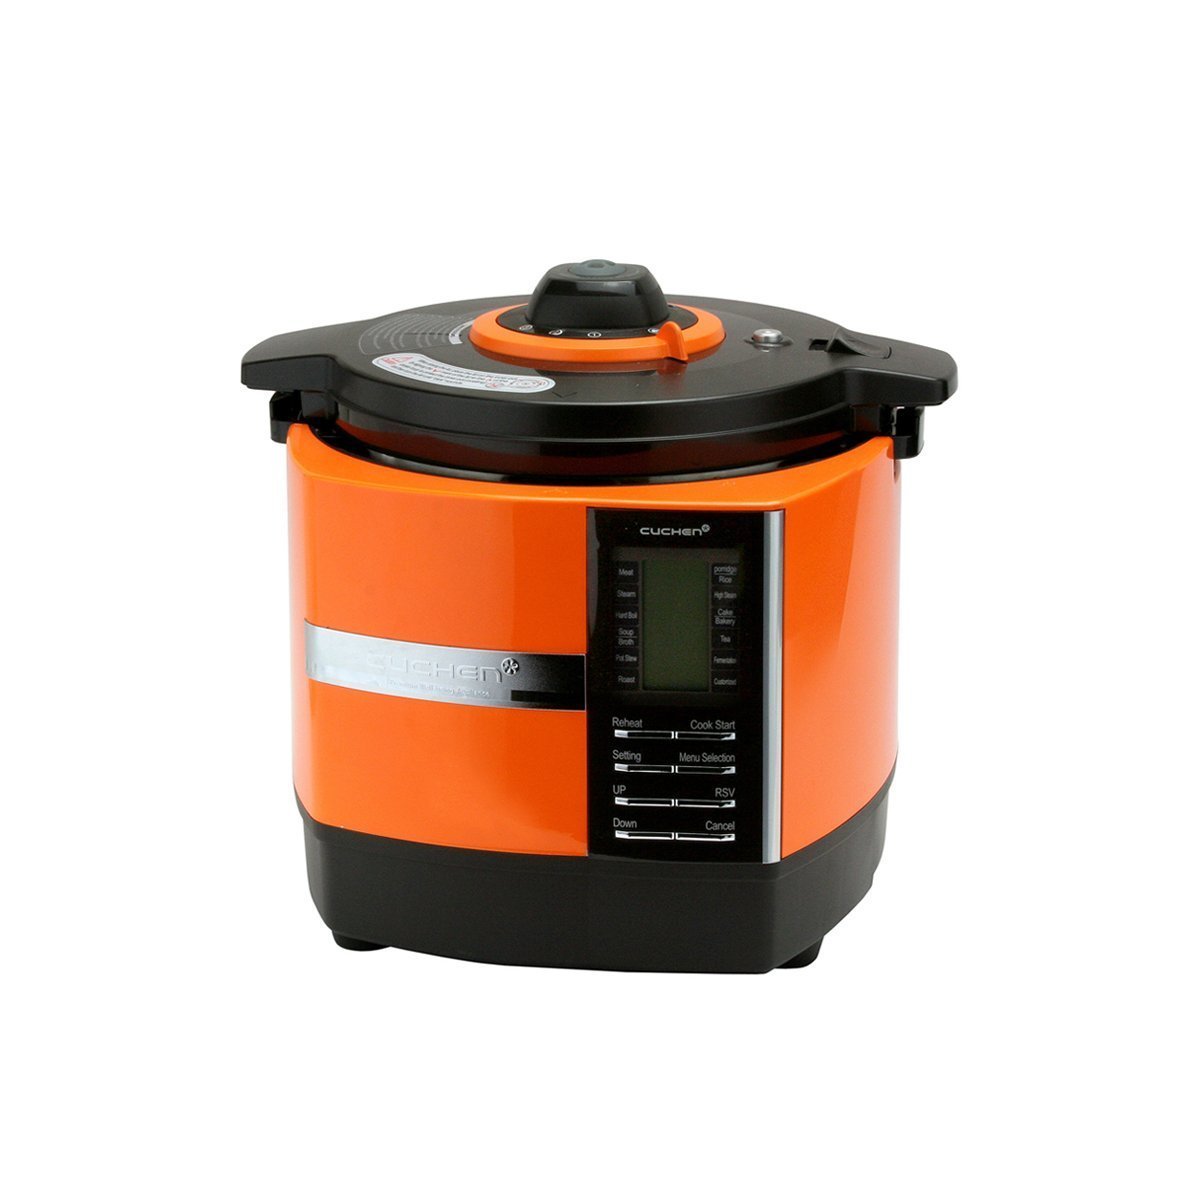 Cuchen Smart Multi Pressure Rice Cooker CK-P181/O (6Cup) Orange - Cuchen US